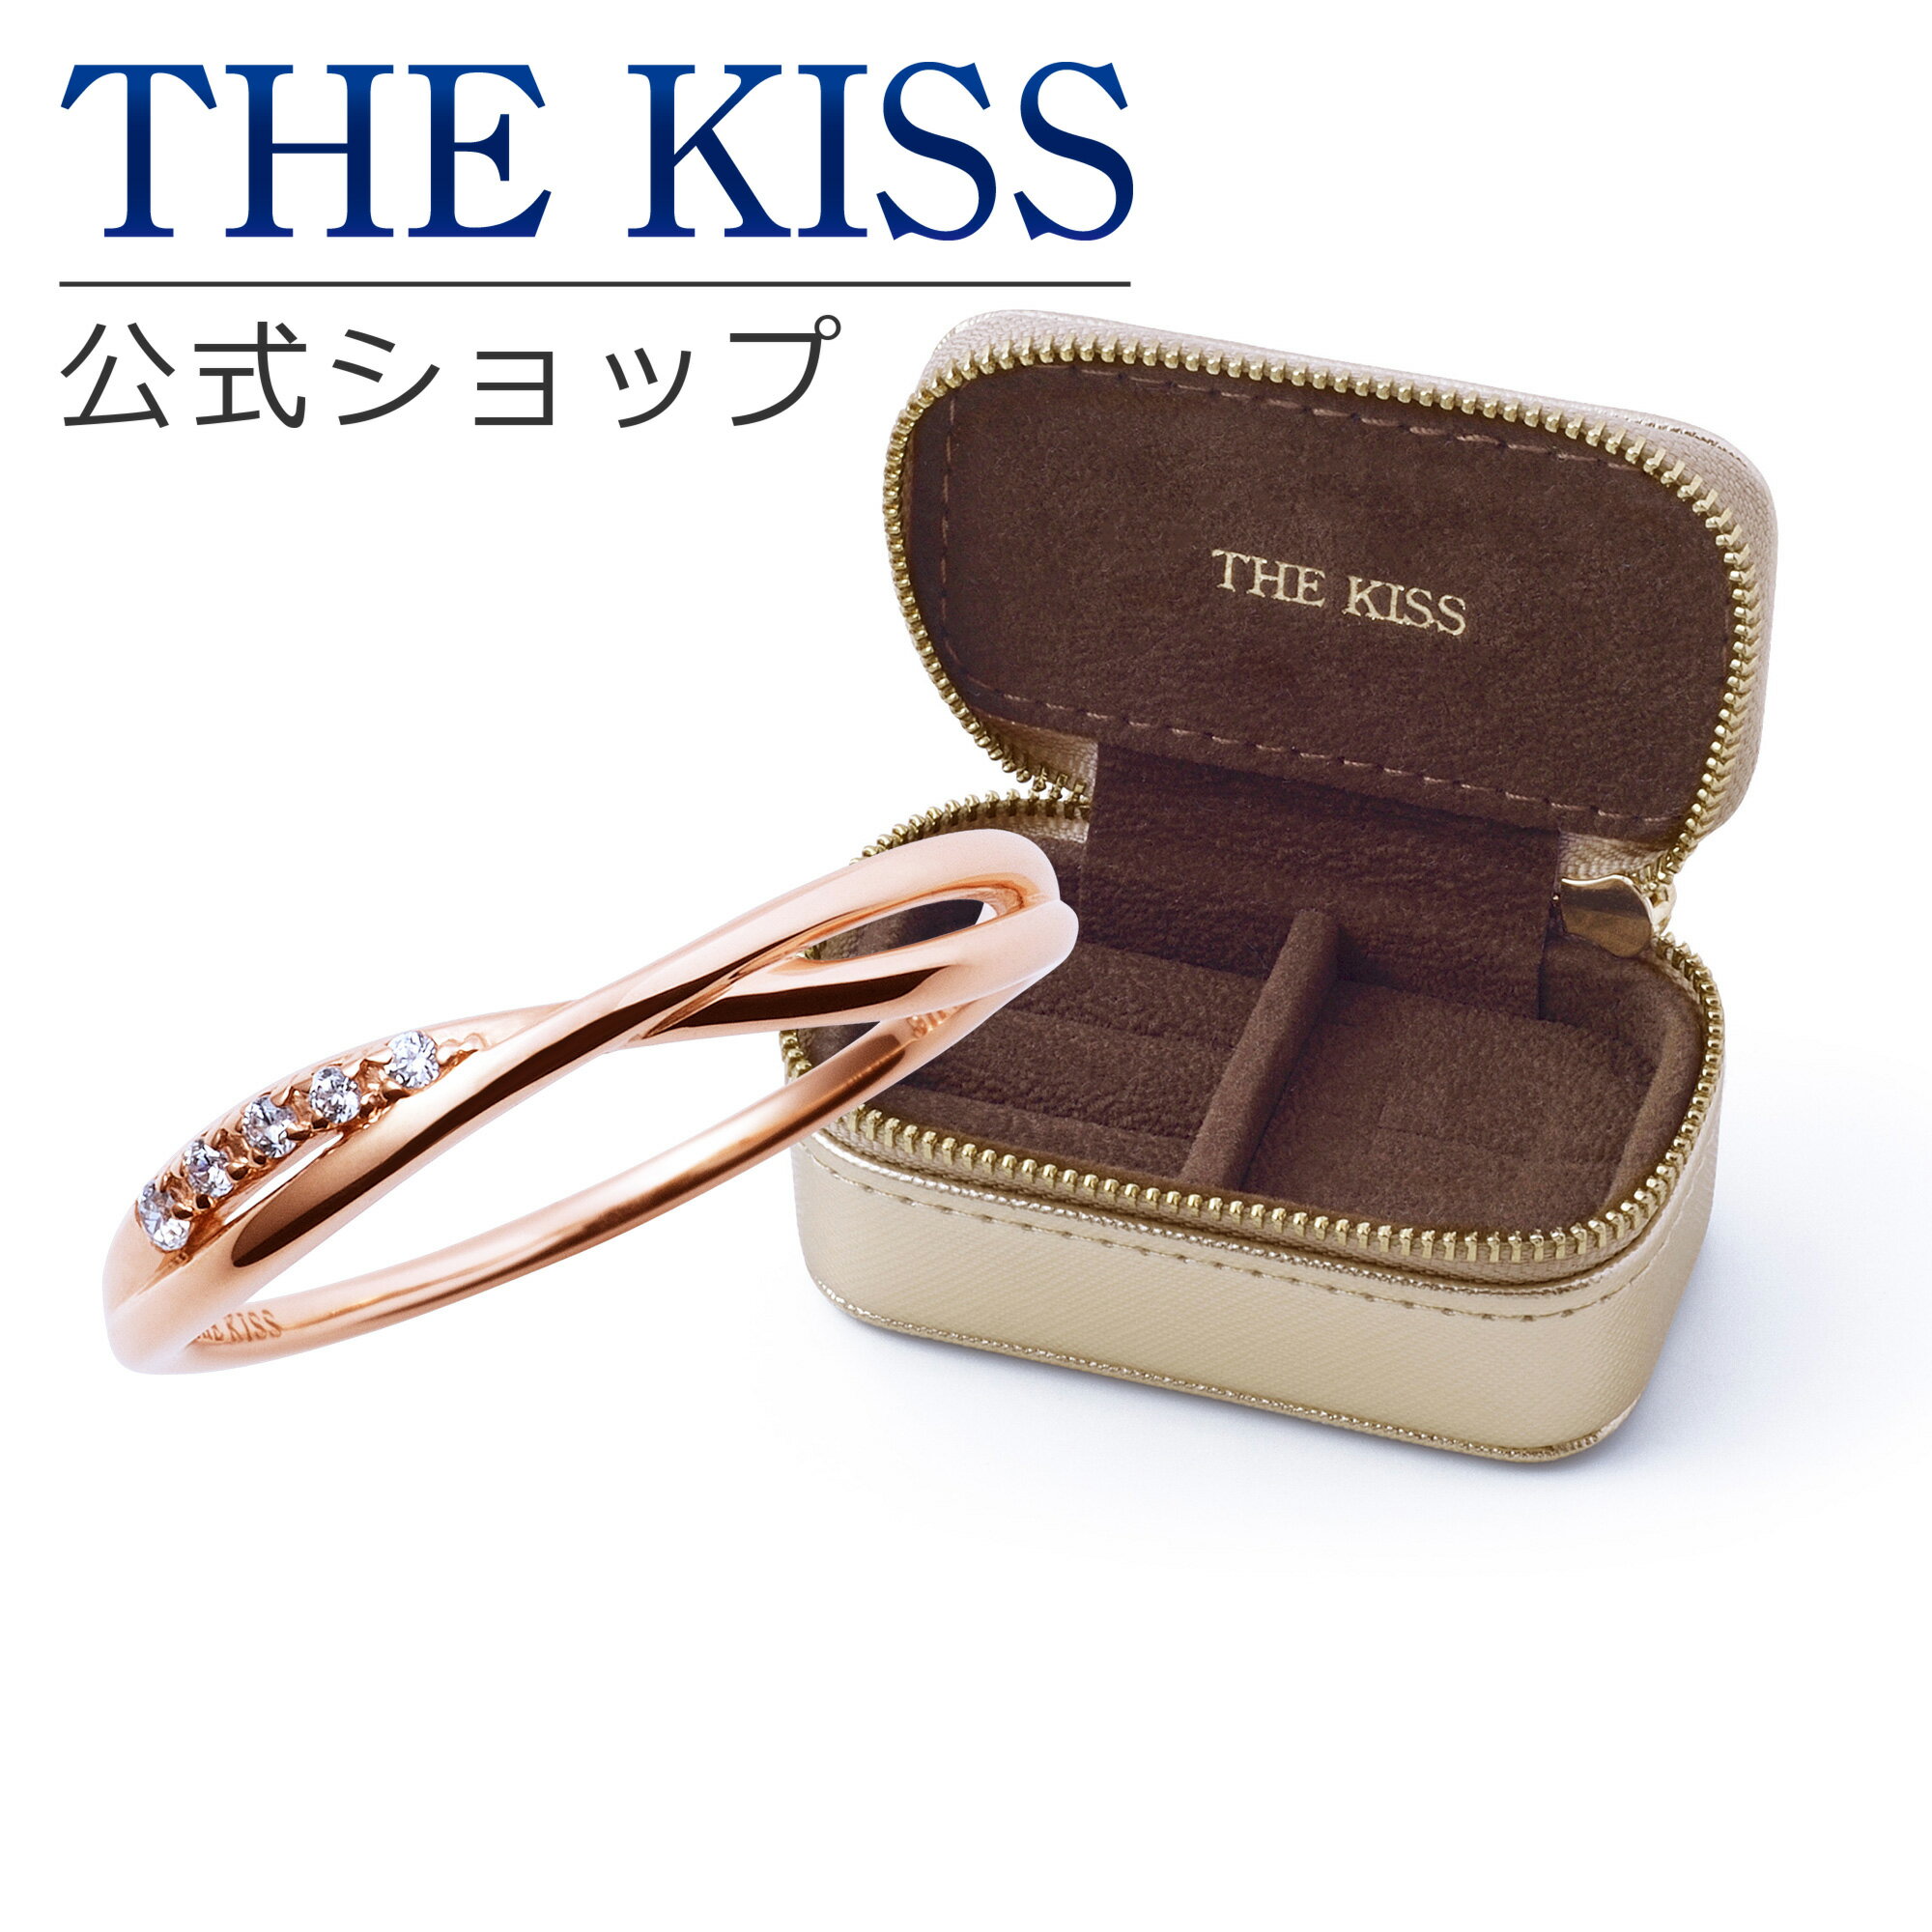 THE KISS 公式ショップ ジュエリーポーチセット シルバー レディース リング ジュエリーポーチ ゴールド 指輪 持ち運び 携帯用 ミニ トラベル アクセサリー用品 ケース ギフト SR2017CB-POUCH-REGULAR01 ブライダル